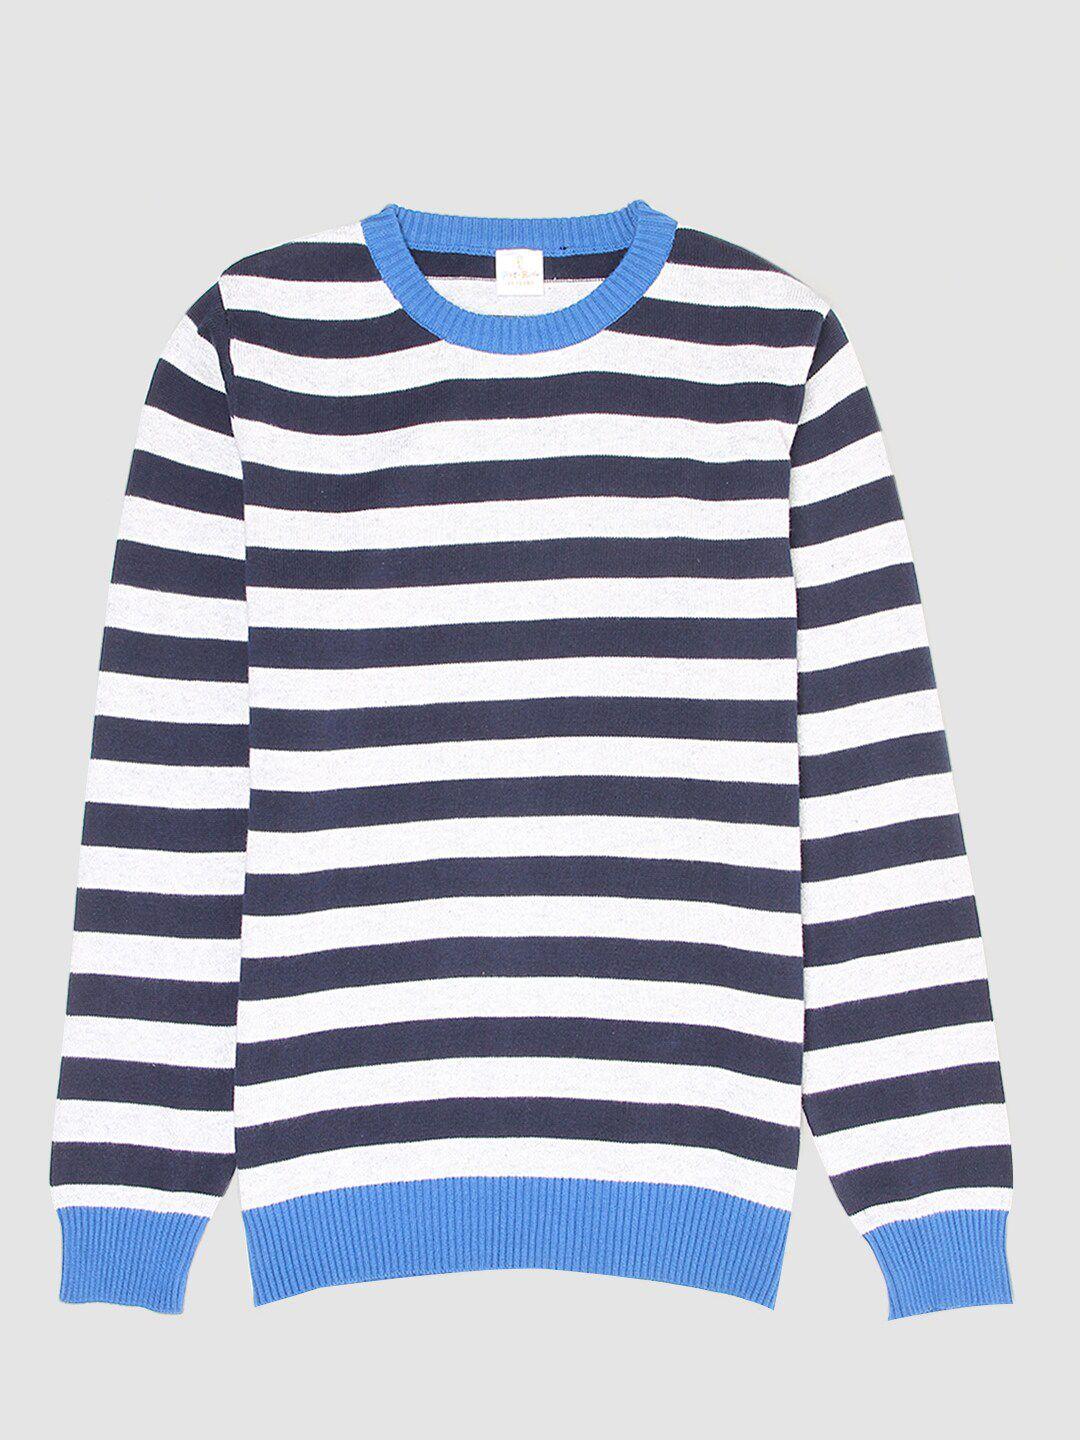 portobello boys blue & white striped pullover